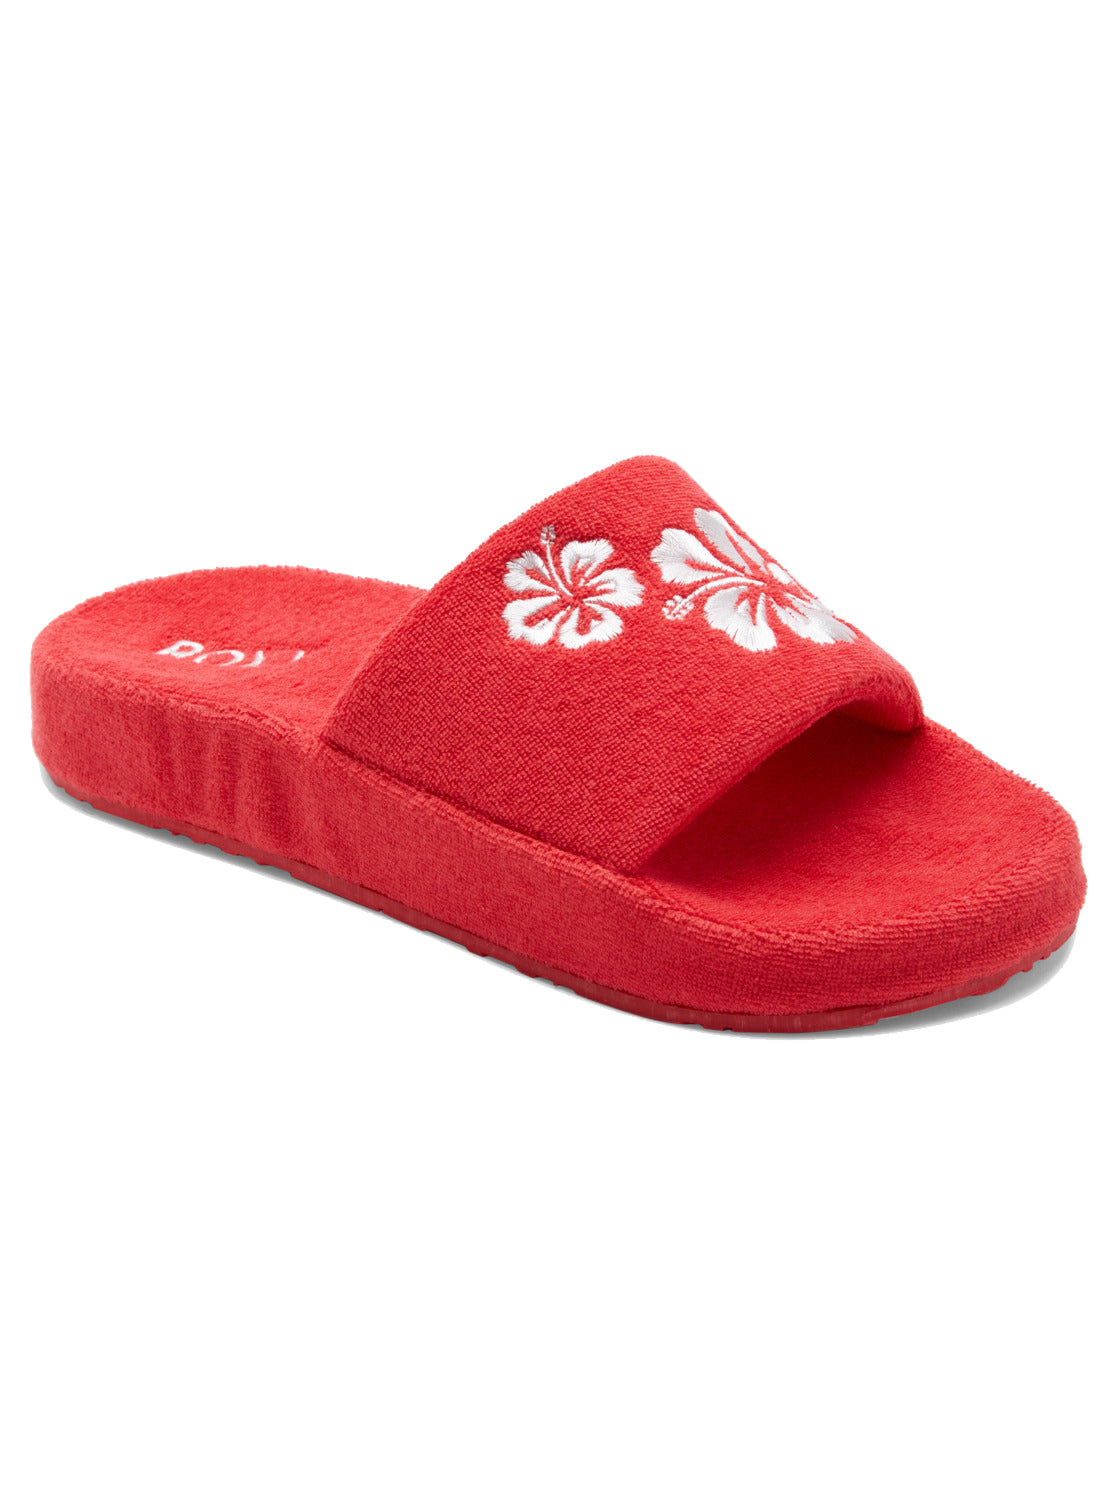 Roxy Slippy Sandals RED 6